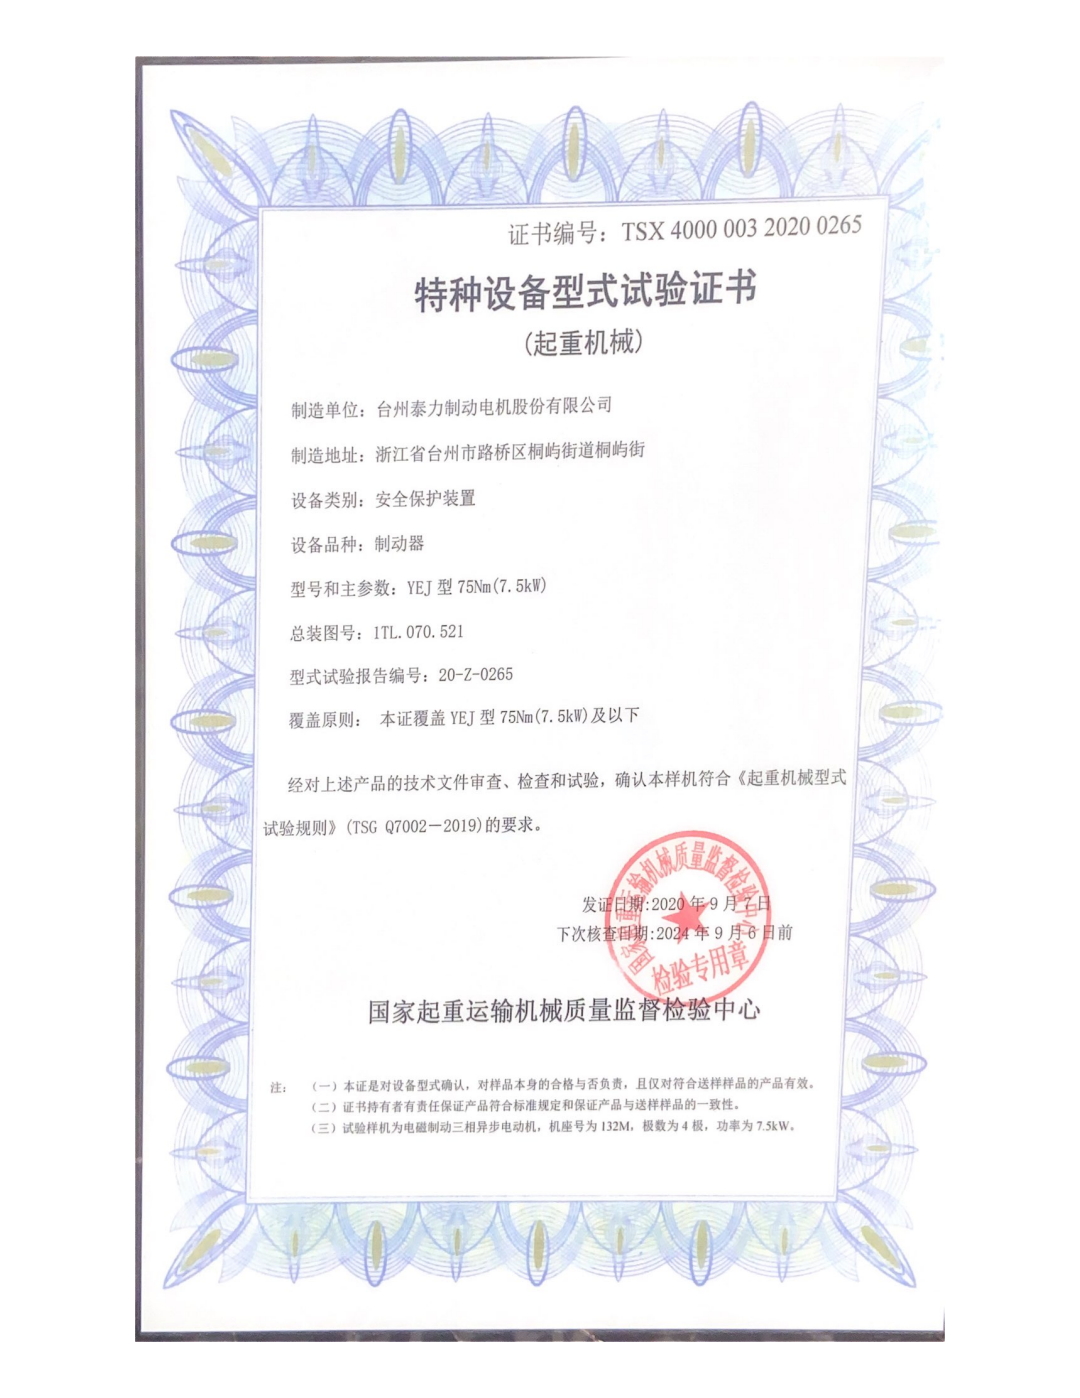 Special equipment type certificate-motor